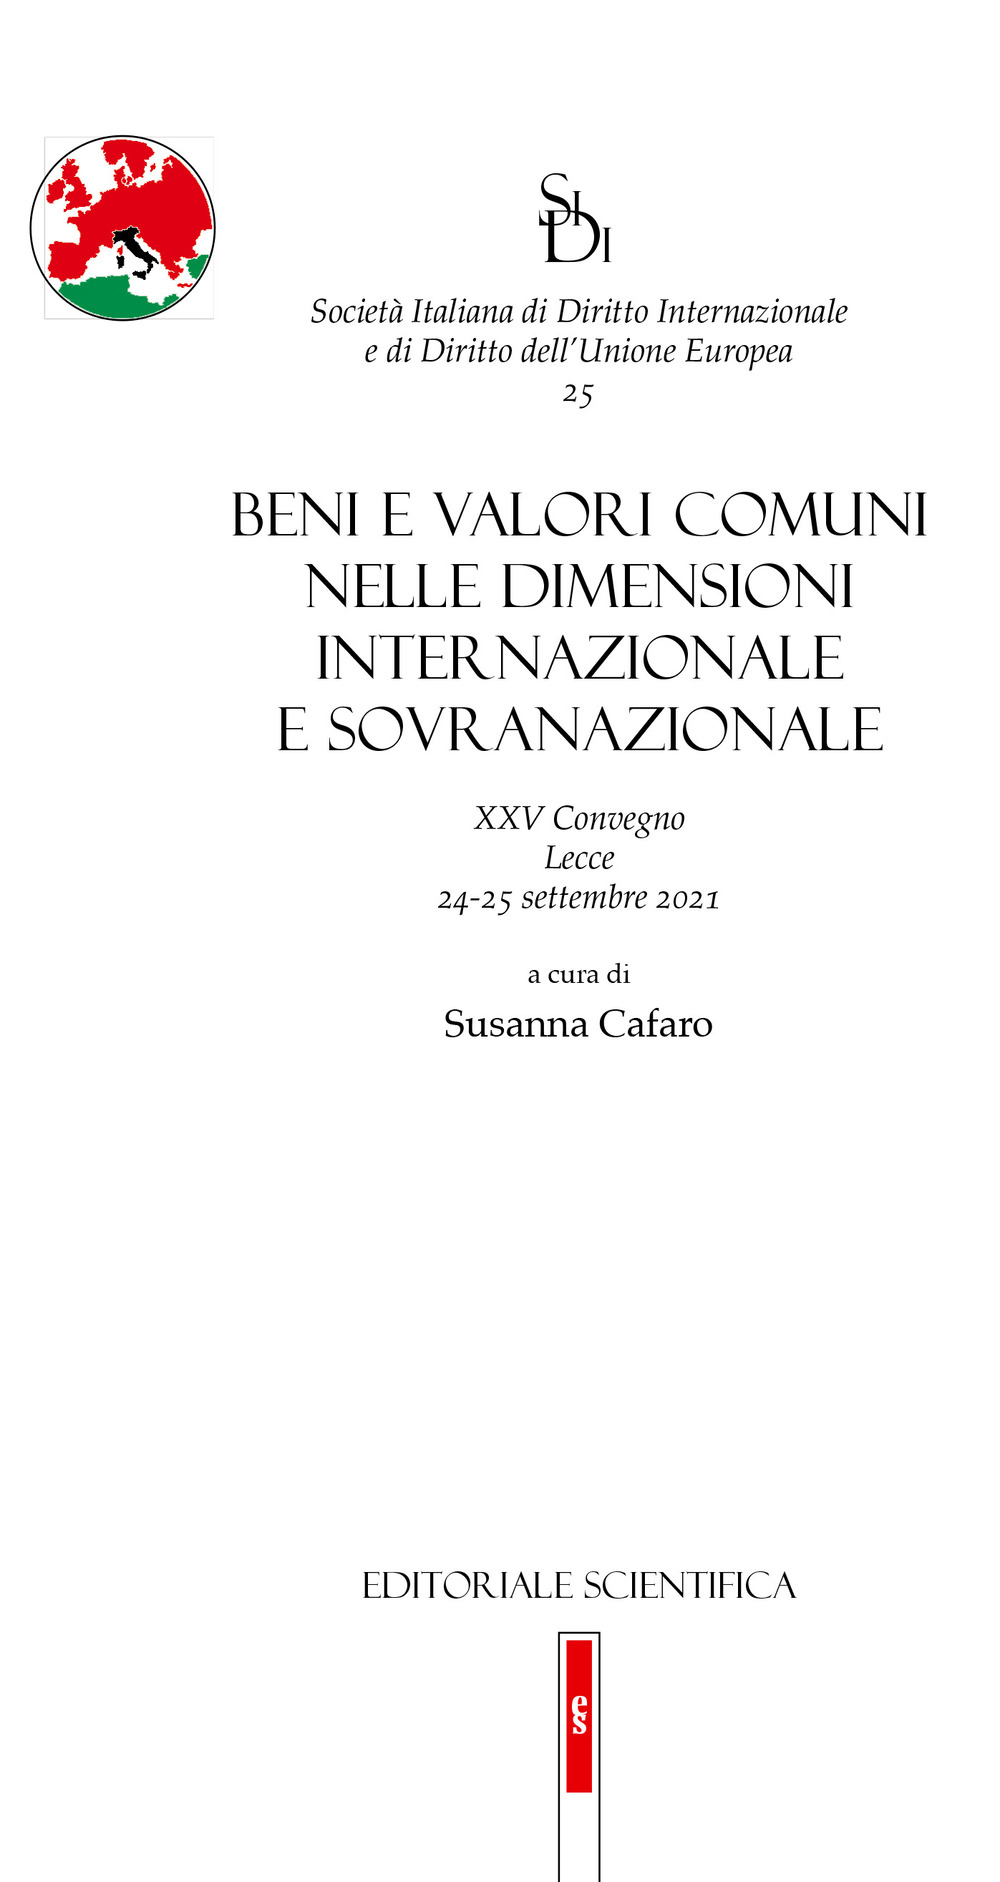 Beni e valori comuni nelle dimensioni internazionale e sovranazionale. XXV Convegno, Lecce 24-25 settembre 2021